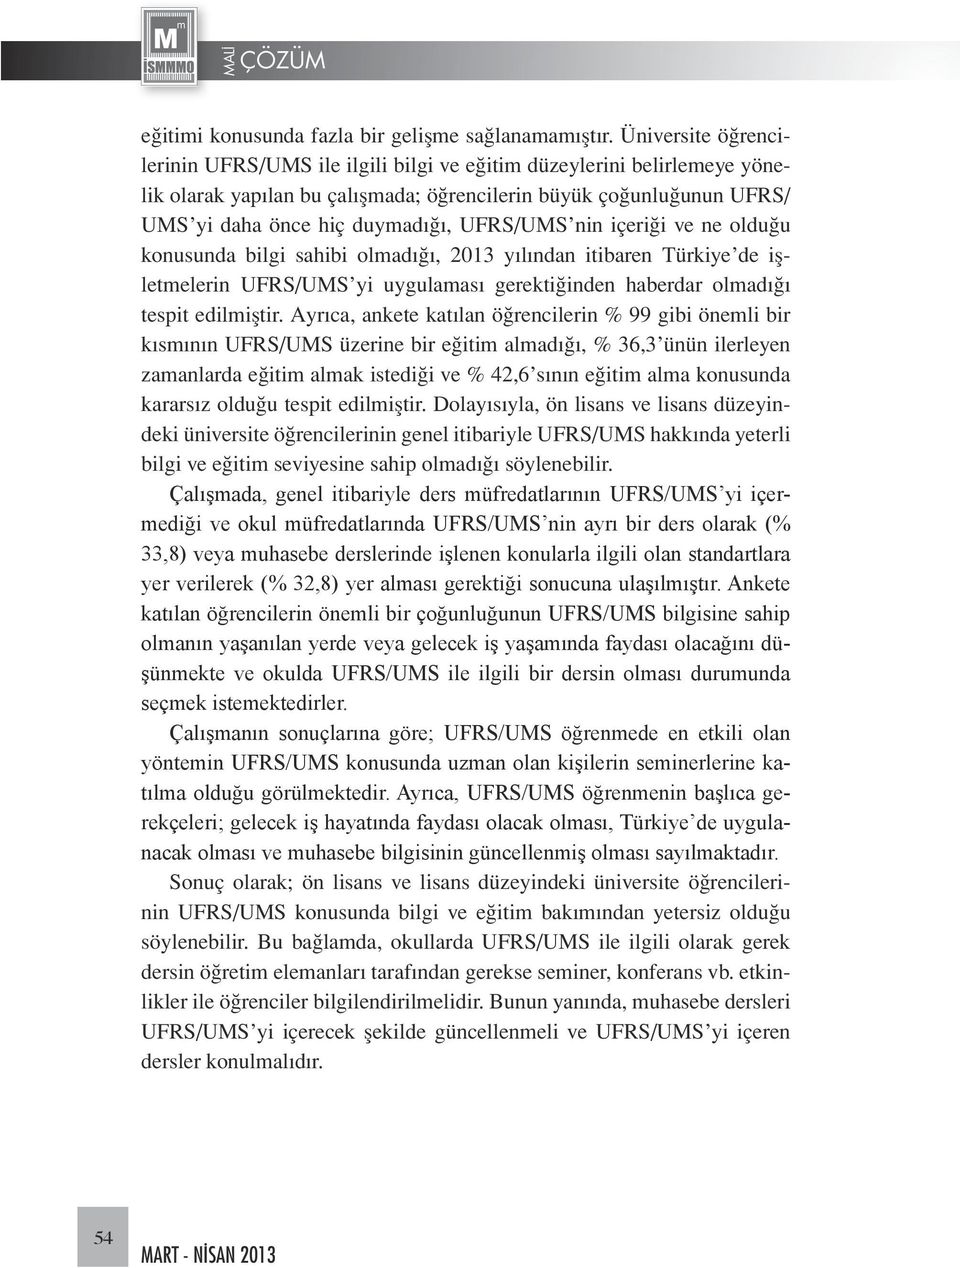 UFRS/UMS nin içeriği ve ne olduğu konusunda bilgi sahibi olmadığı, 2013 yılından itibaren Türkiye de işletmelerin UFRS/UMS yi uygulaması gerektiğinden haberdar olmadığı tespit edilmiştir.